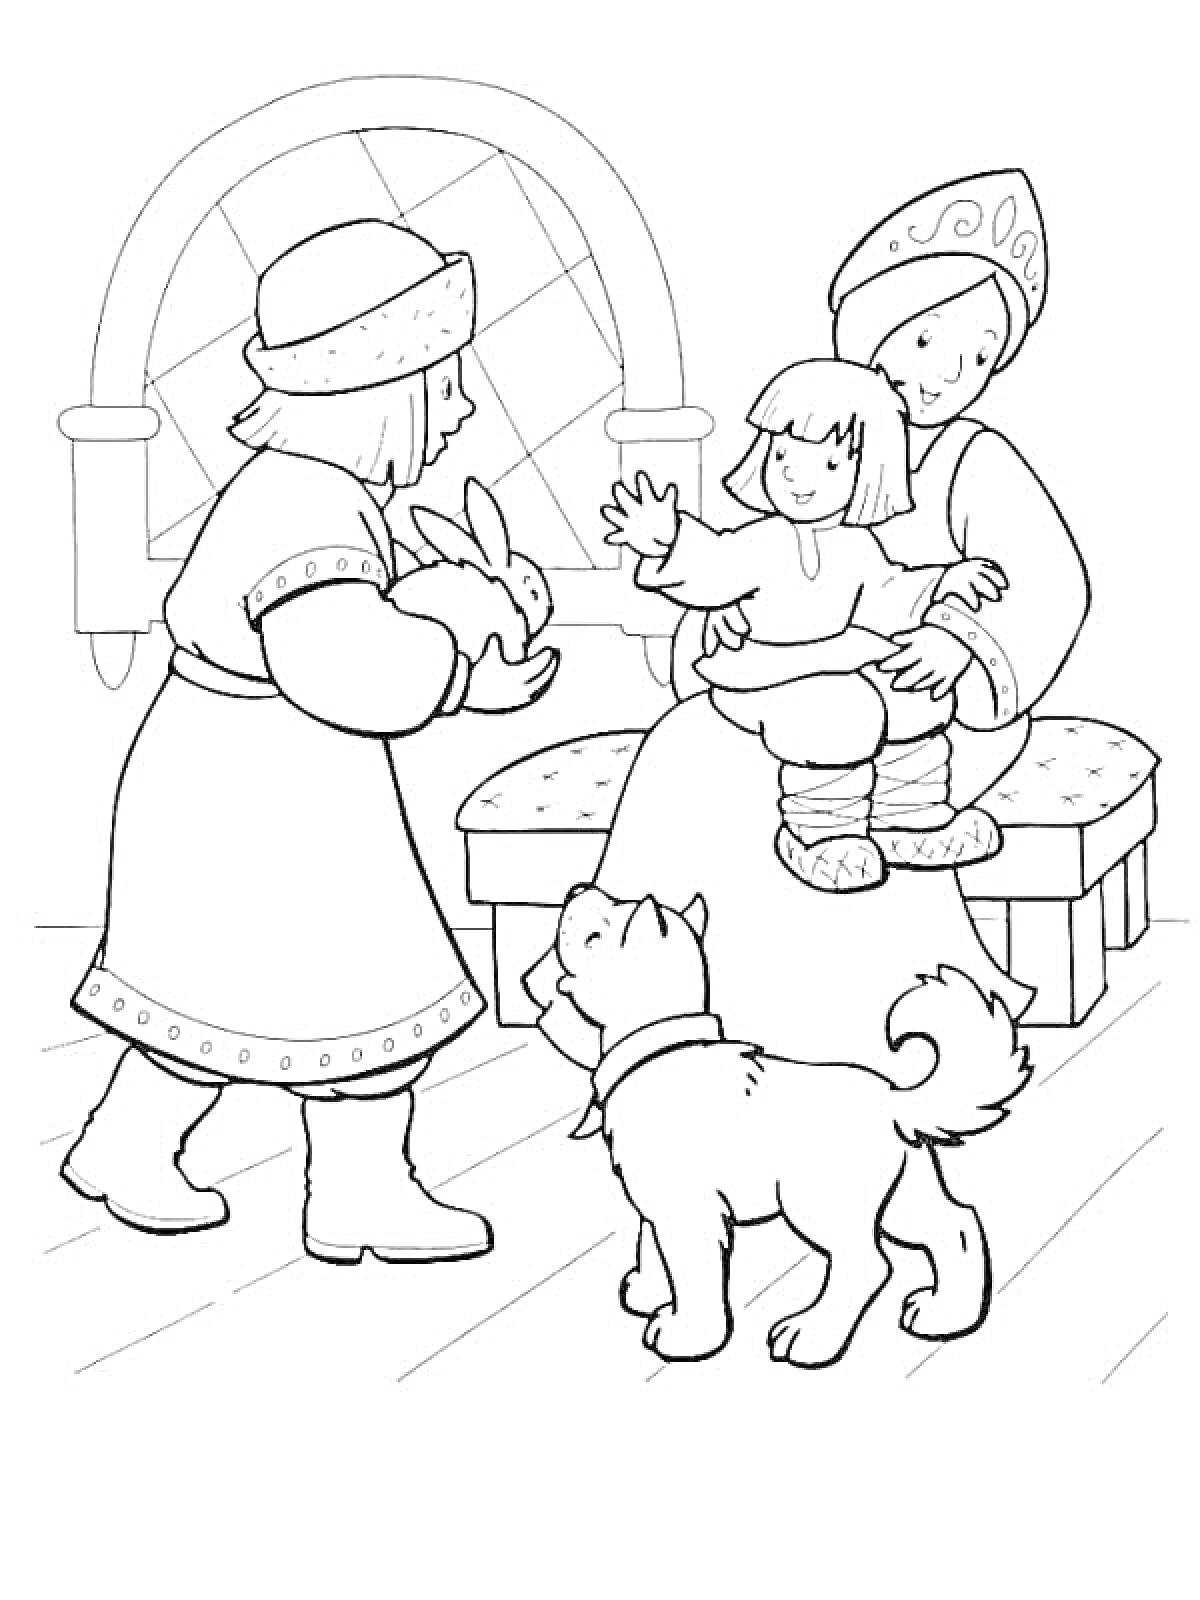 Раскраска Сестрица Аленушка и братец Иванушка с мужчиной, кроликом и собакой в доме